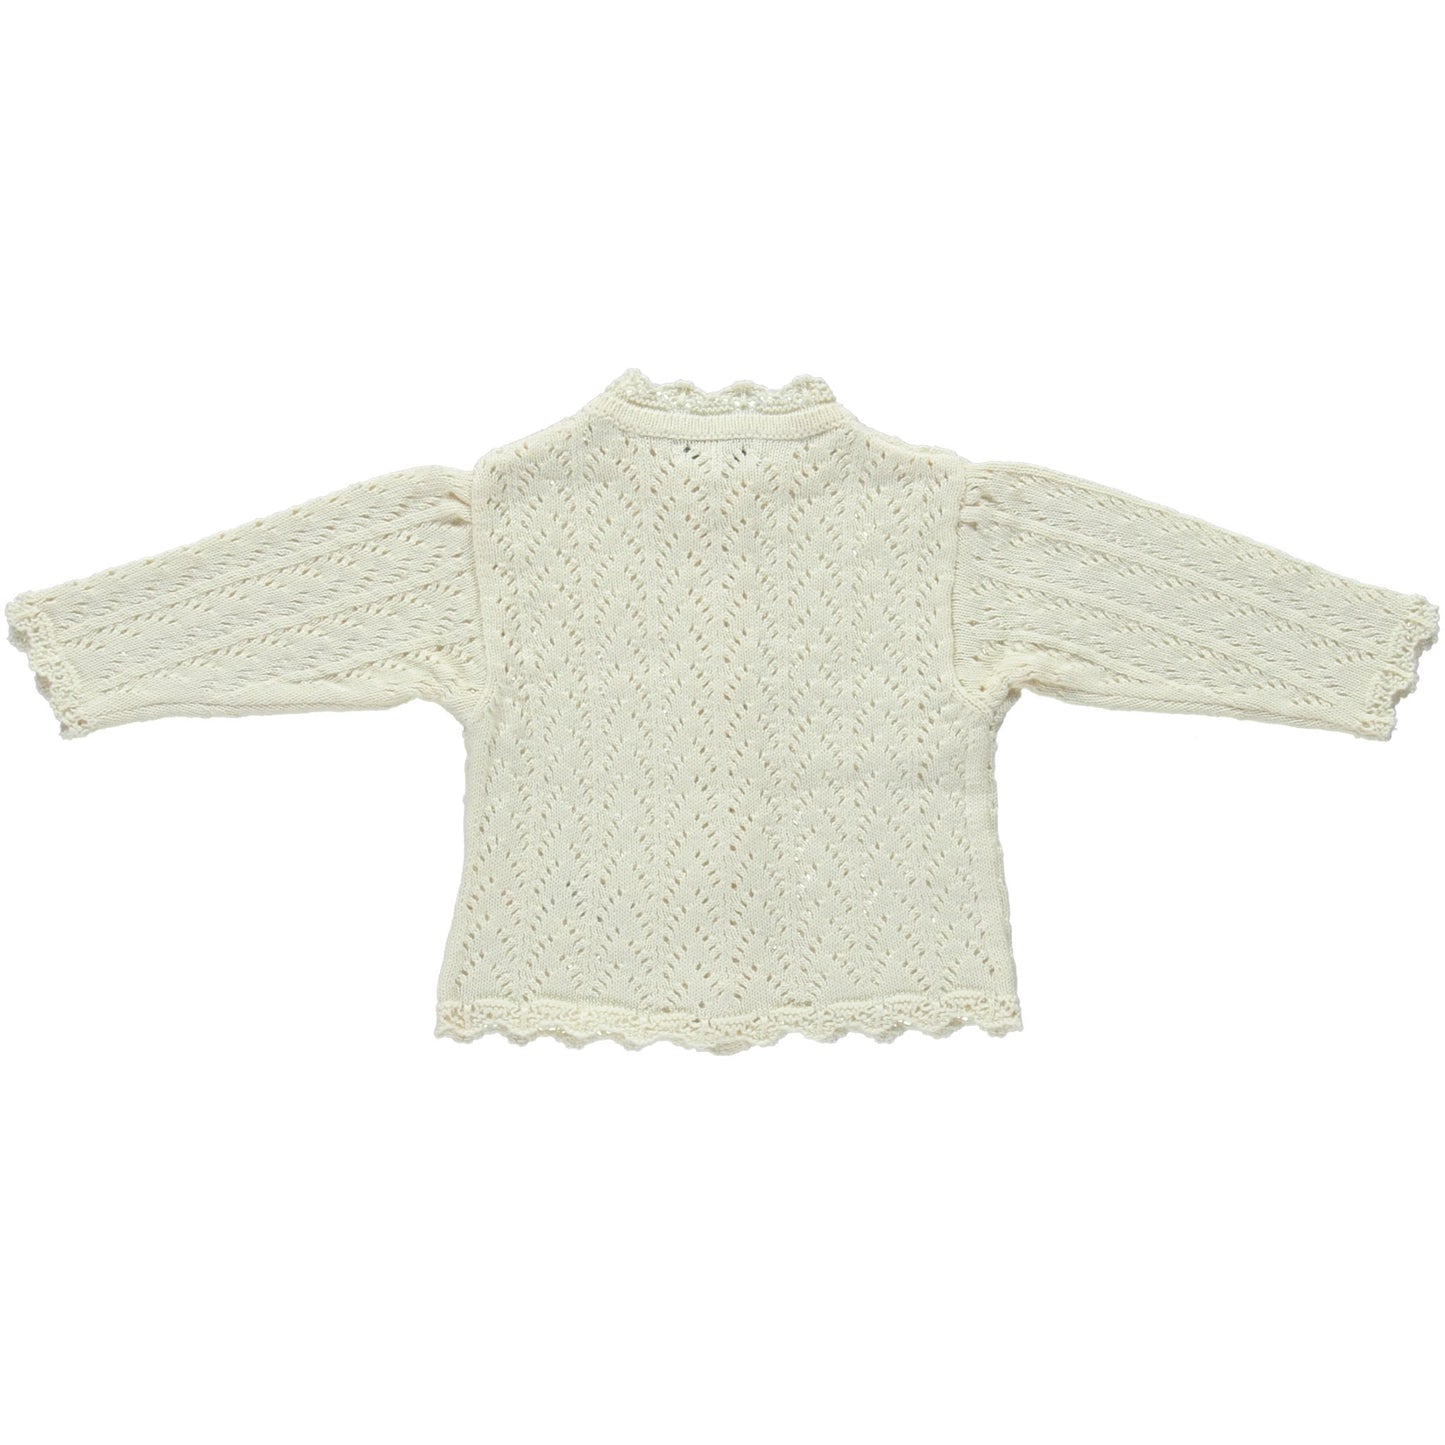 Mabel cardigan Knitwear Bebe Organic 